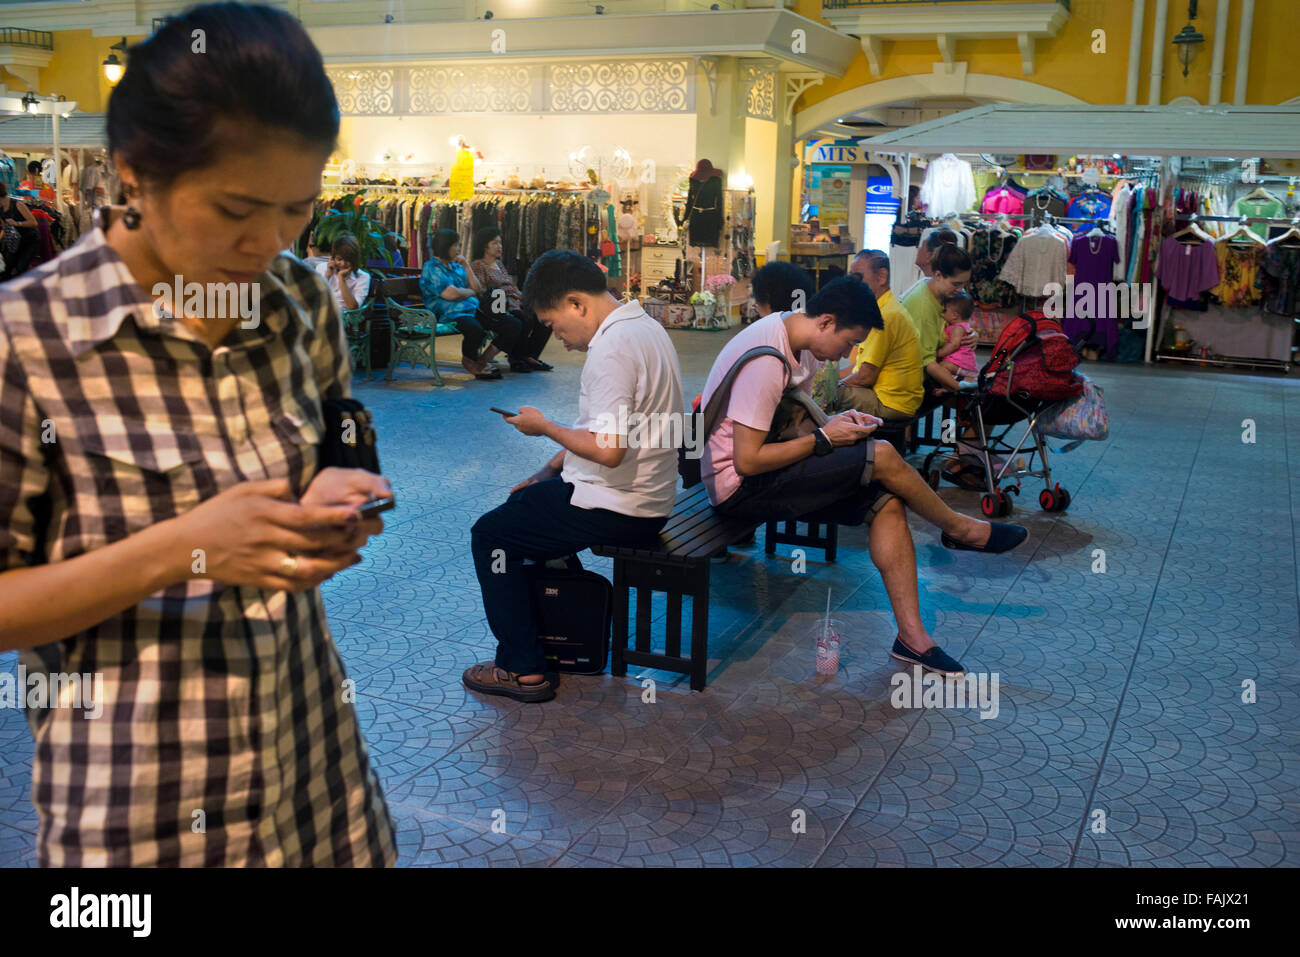 Tutto è collegato al telefono cellulare, il centro commerciale di Bangkok, Tailandia. Foto Stock